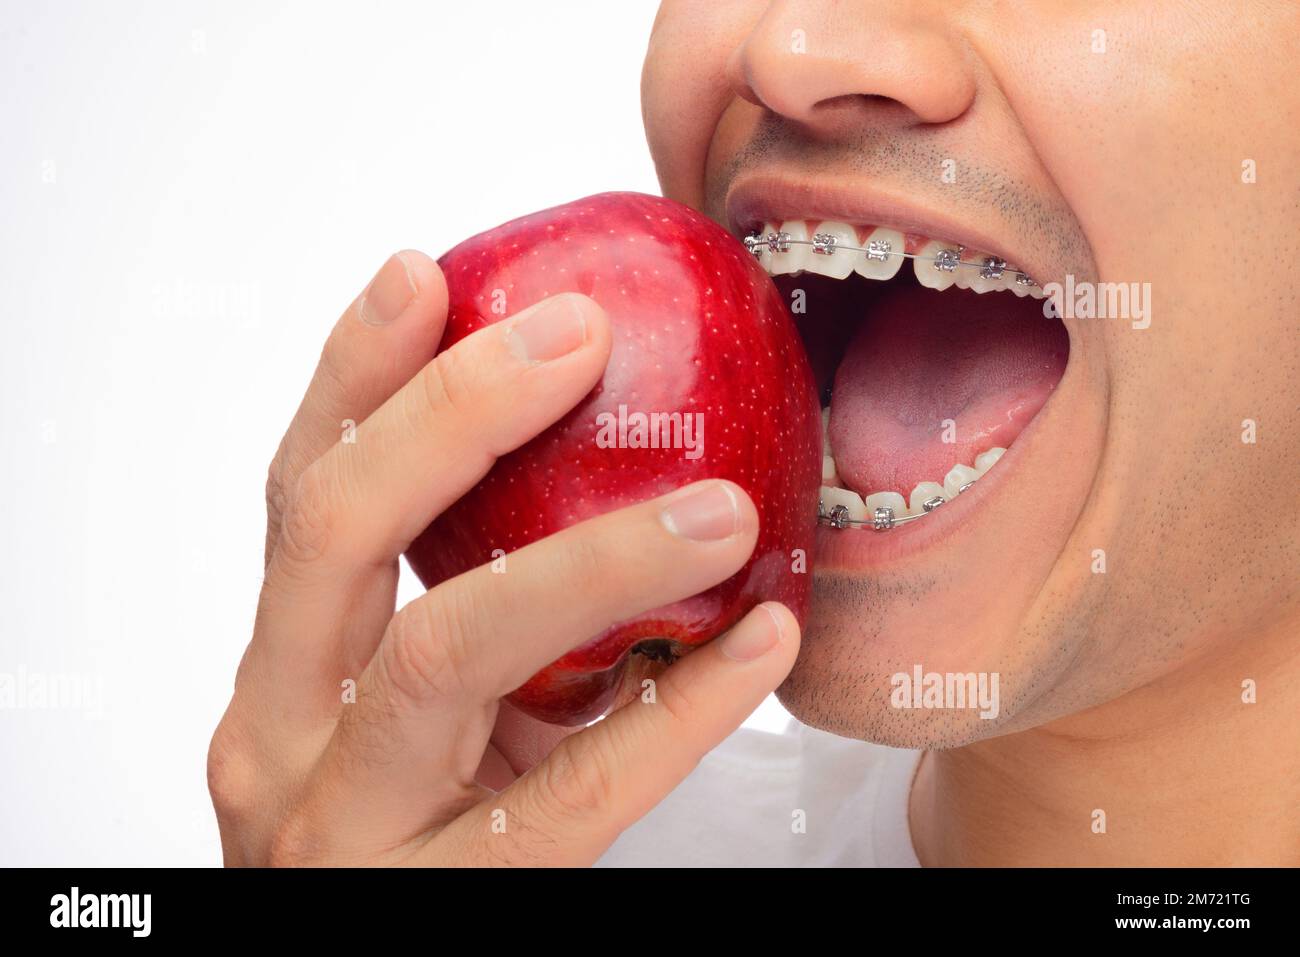 Homme hispanique à la peau brune, morsure une pomme rouge avec ses bretelles,  mauvaise utilisation de l'orthodontie, une personne Photo Stock - Alamy